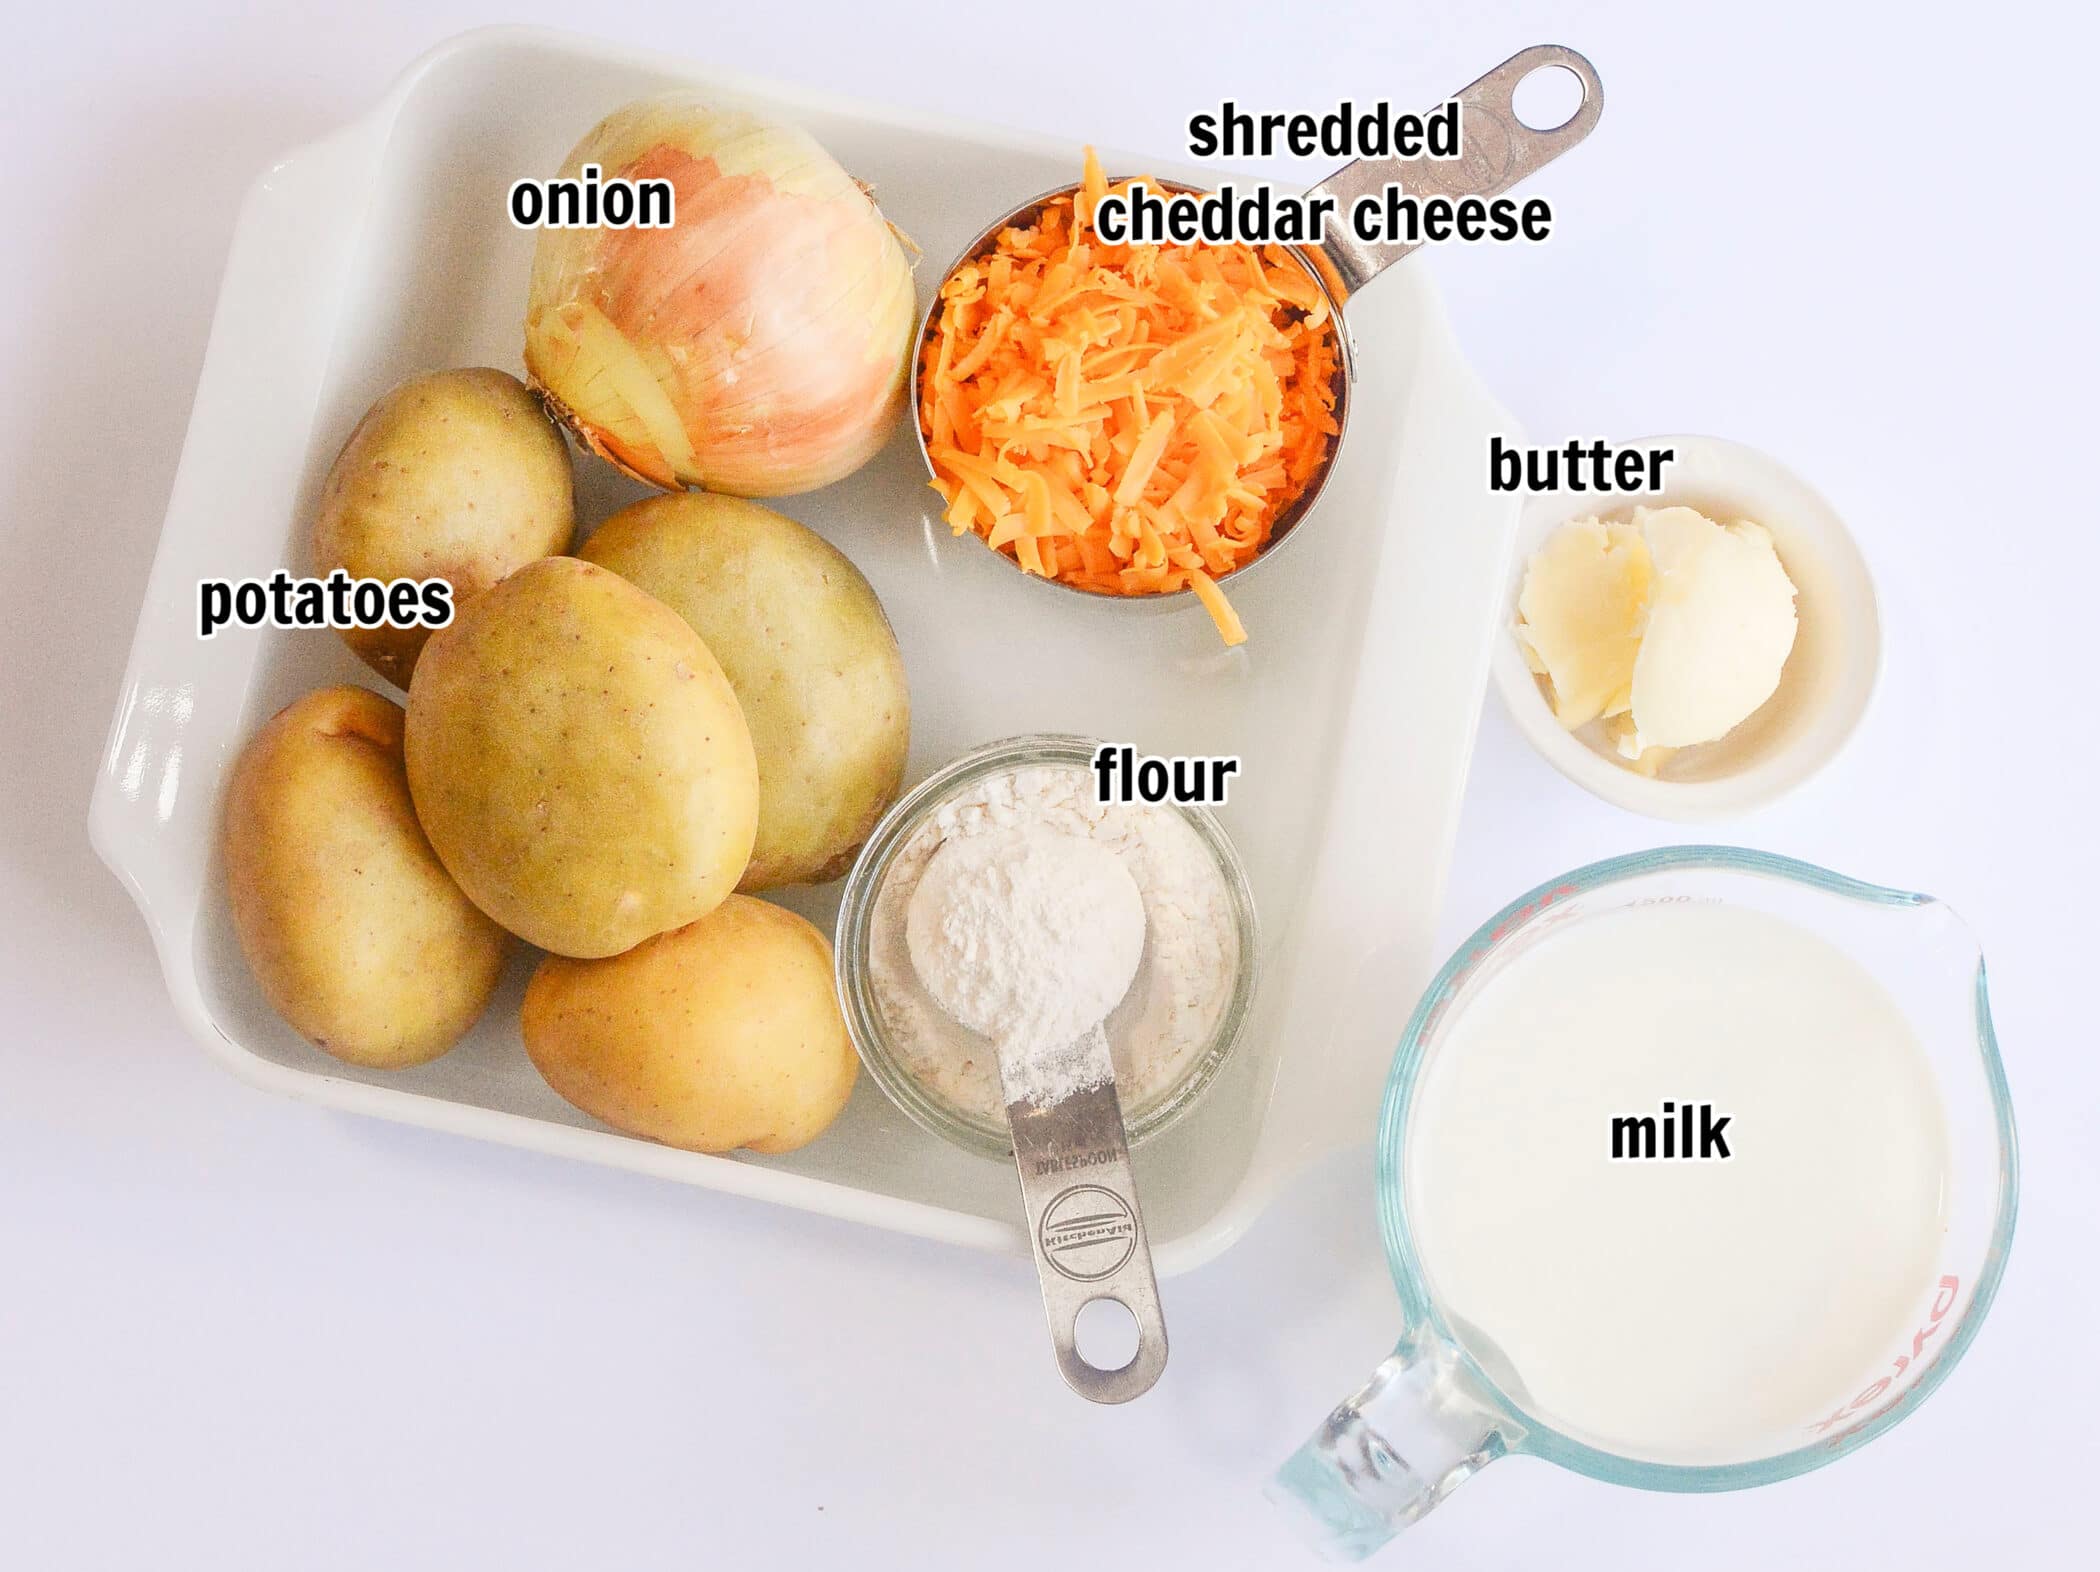 scalloped potato ingredients